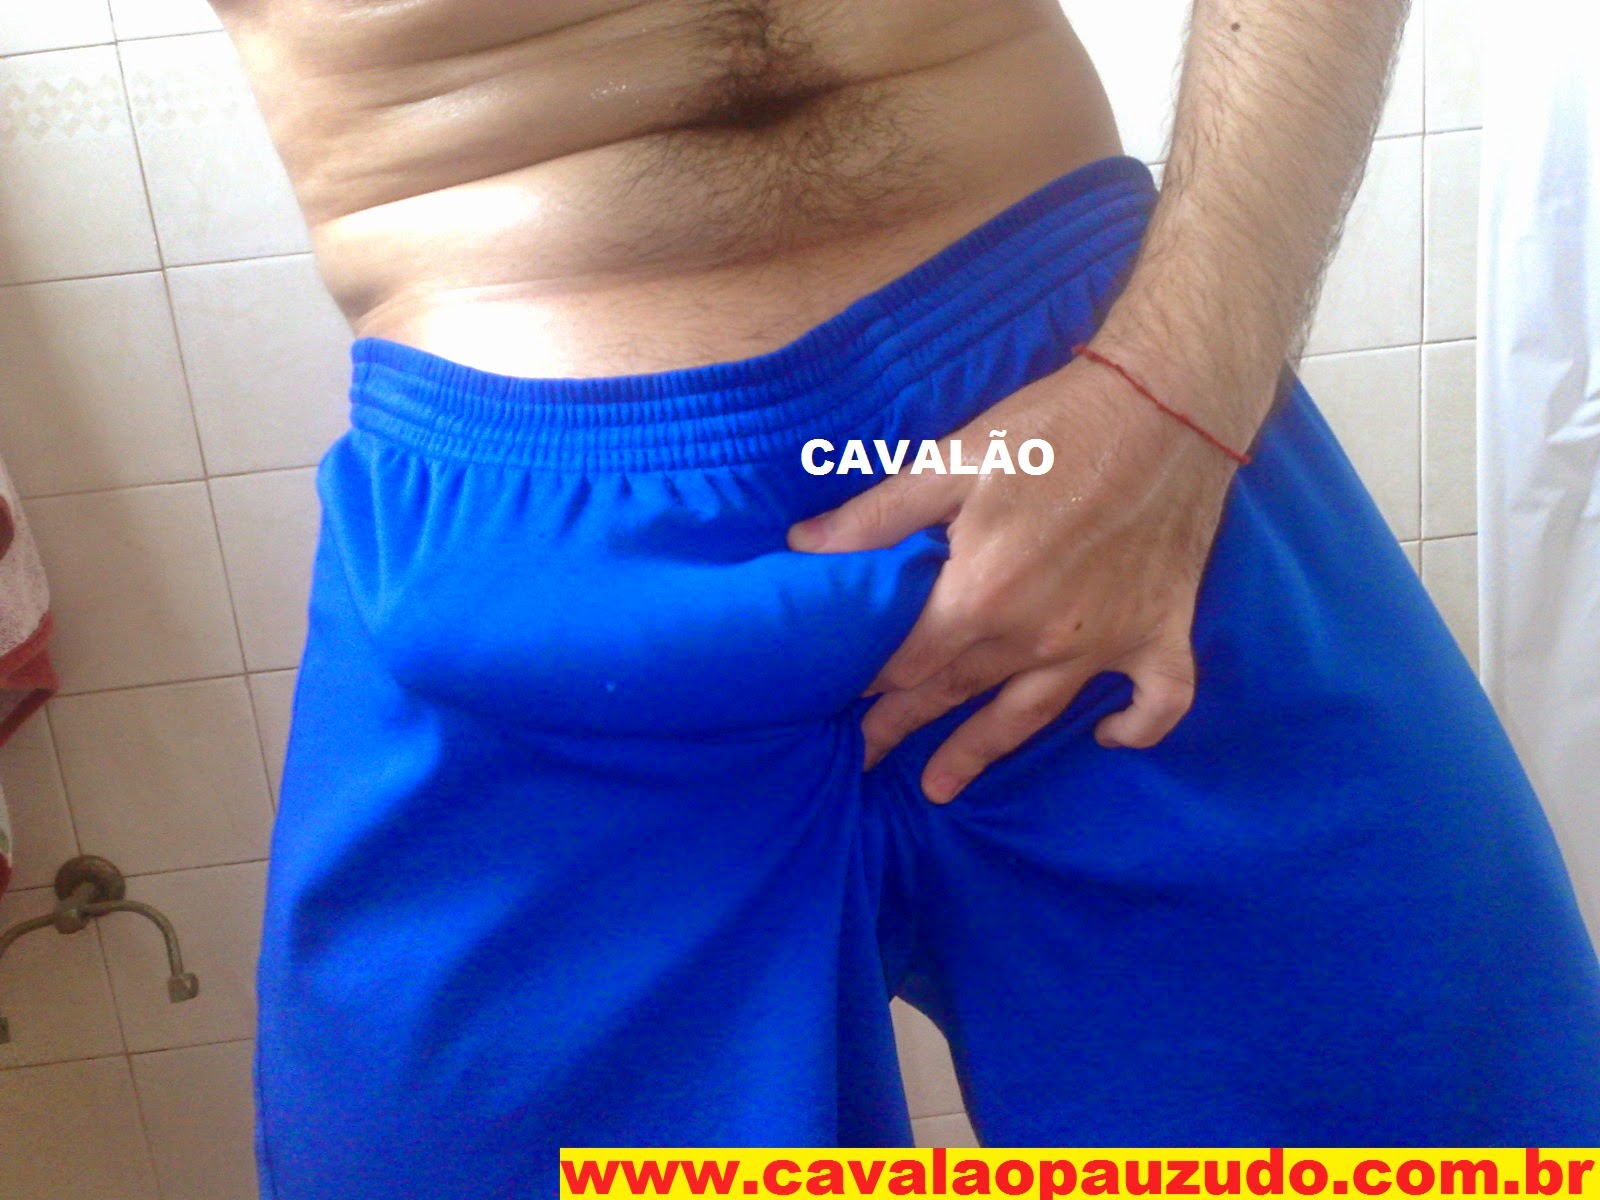 http://www.lojacavalaopauzudo.com.br/2013/12/web-cam.html